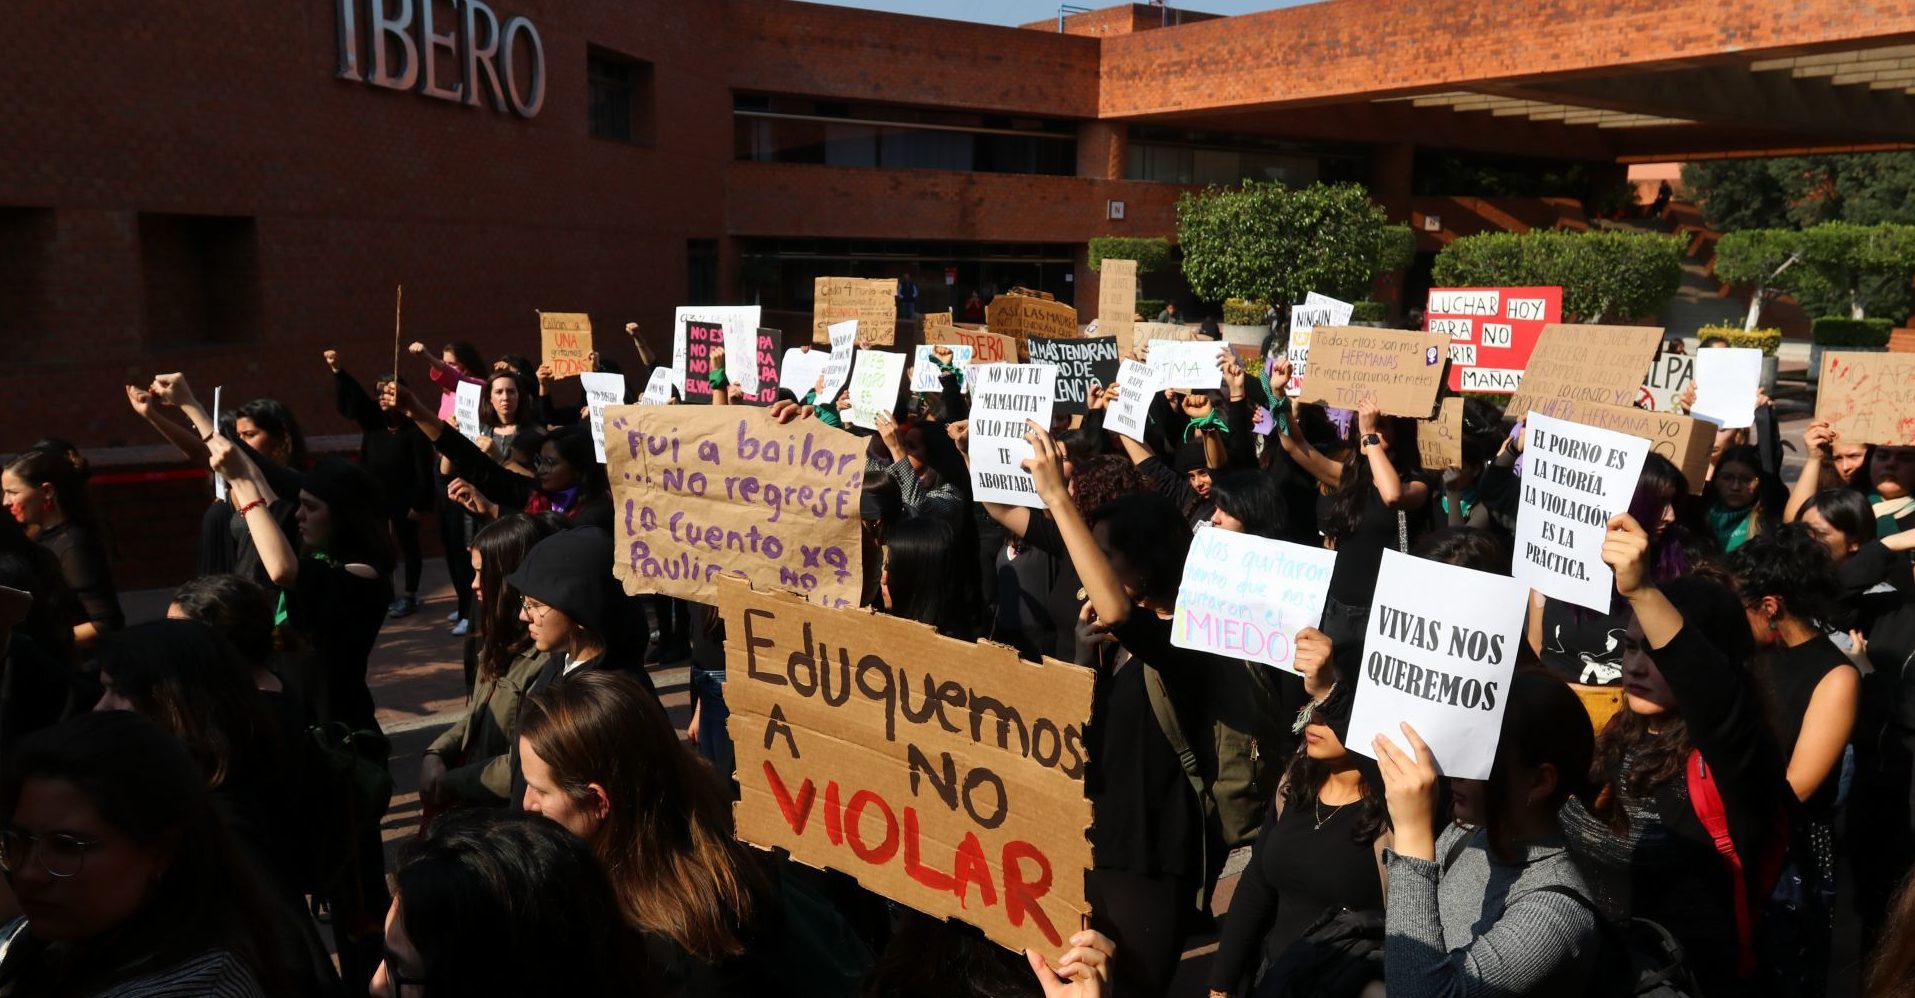 Ibero investigará denuncias de acoso sexual expuestas en 'tendedero'